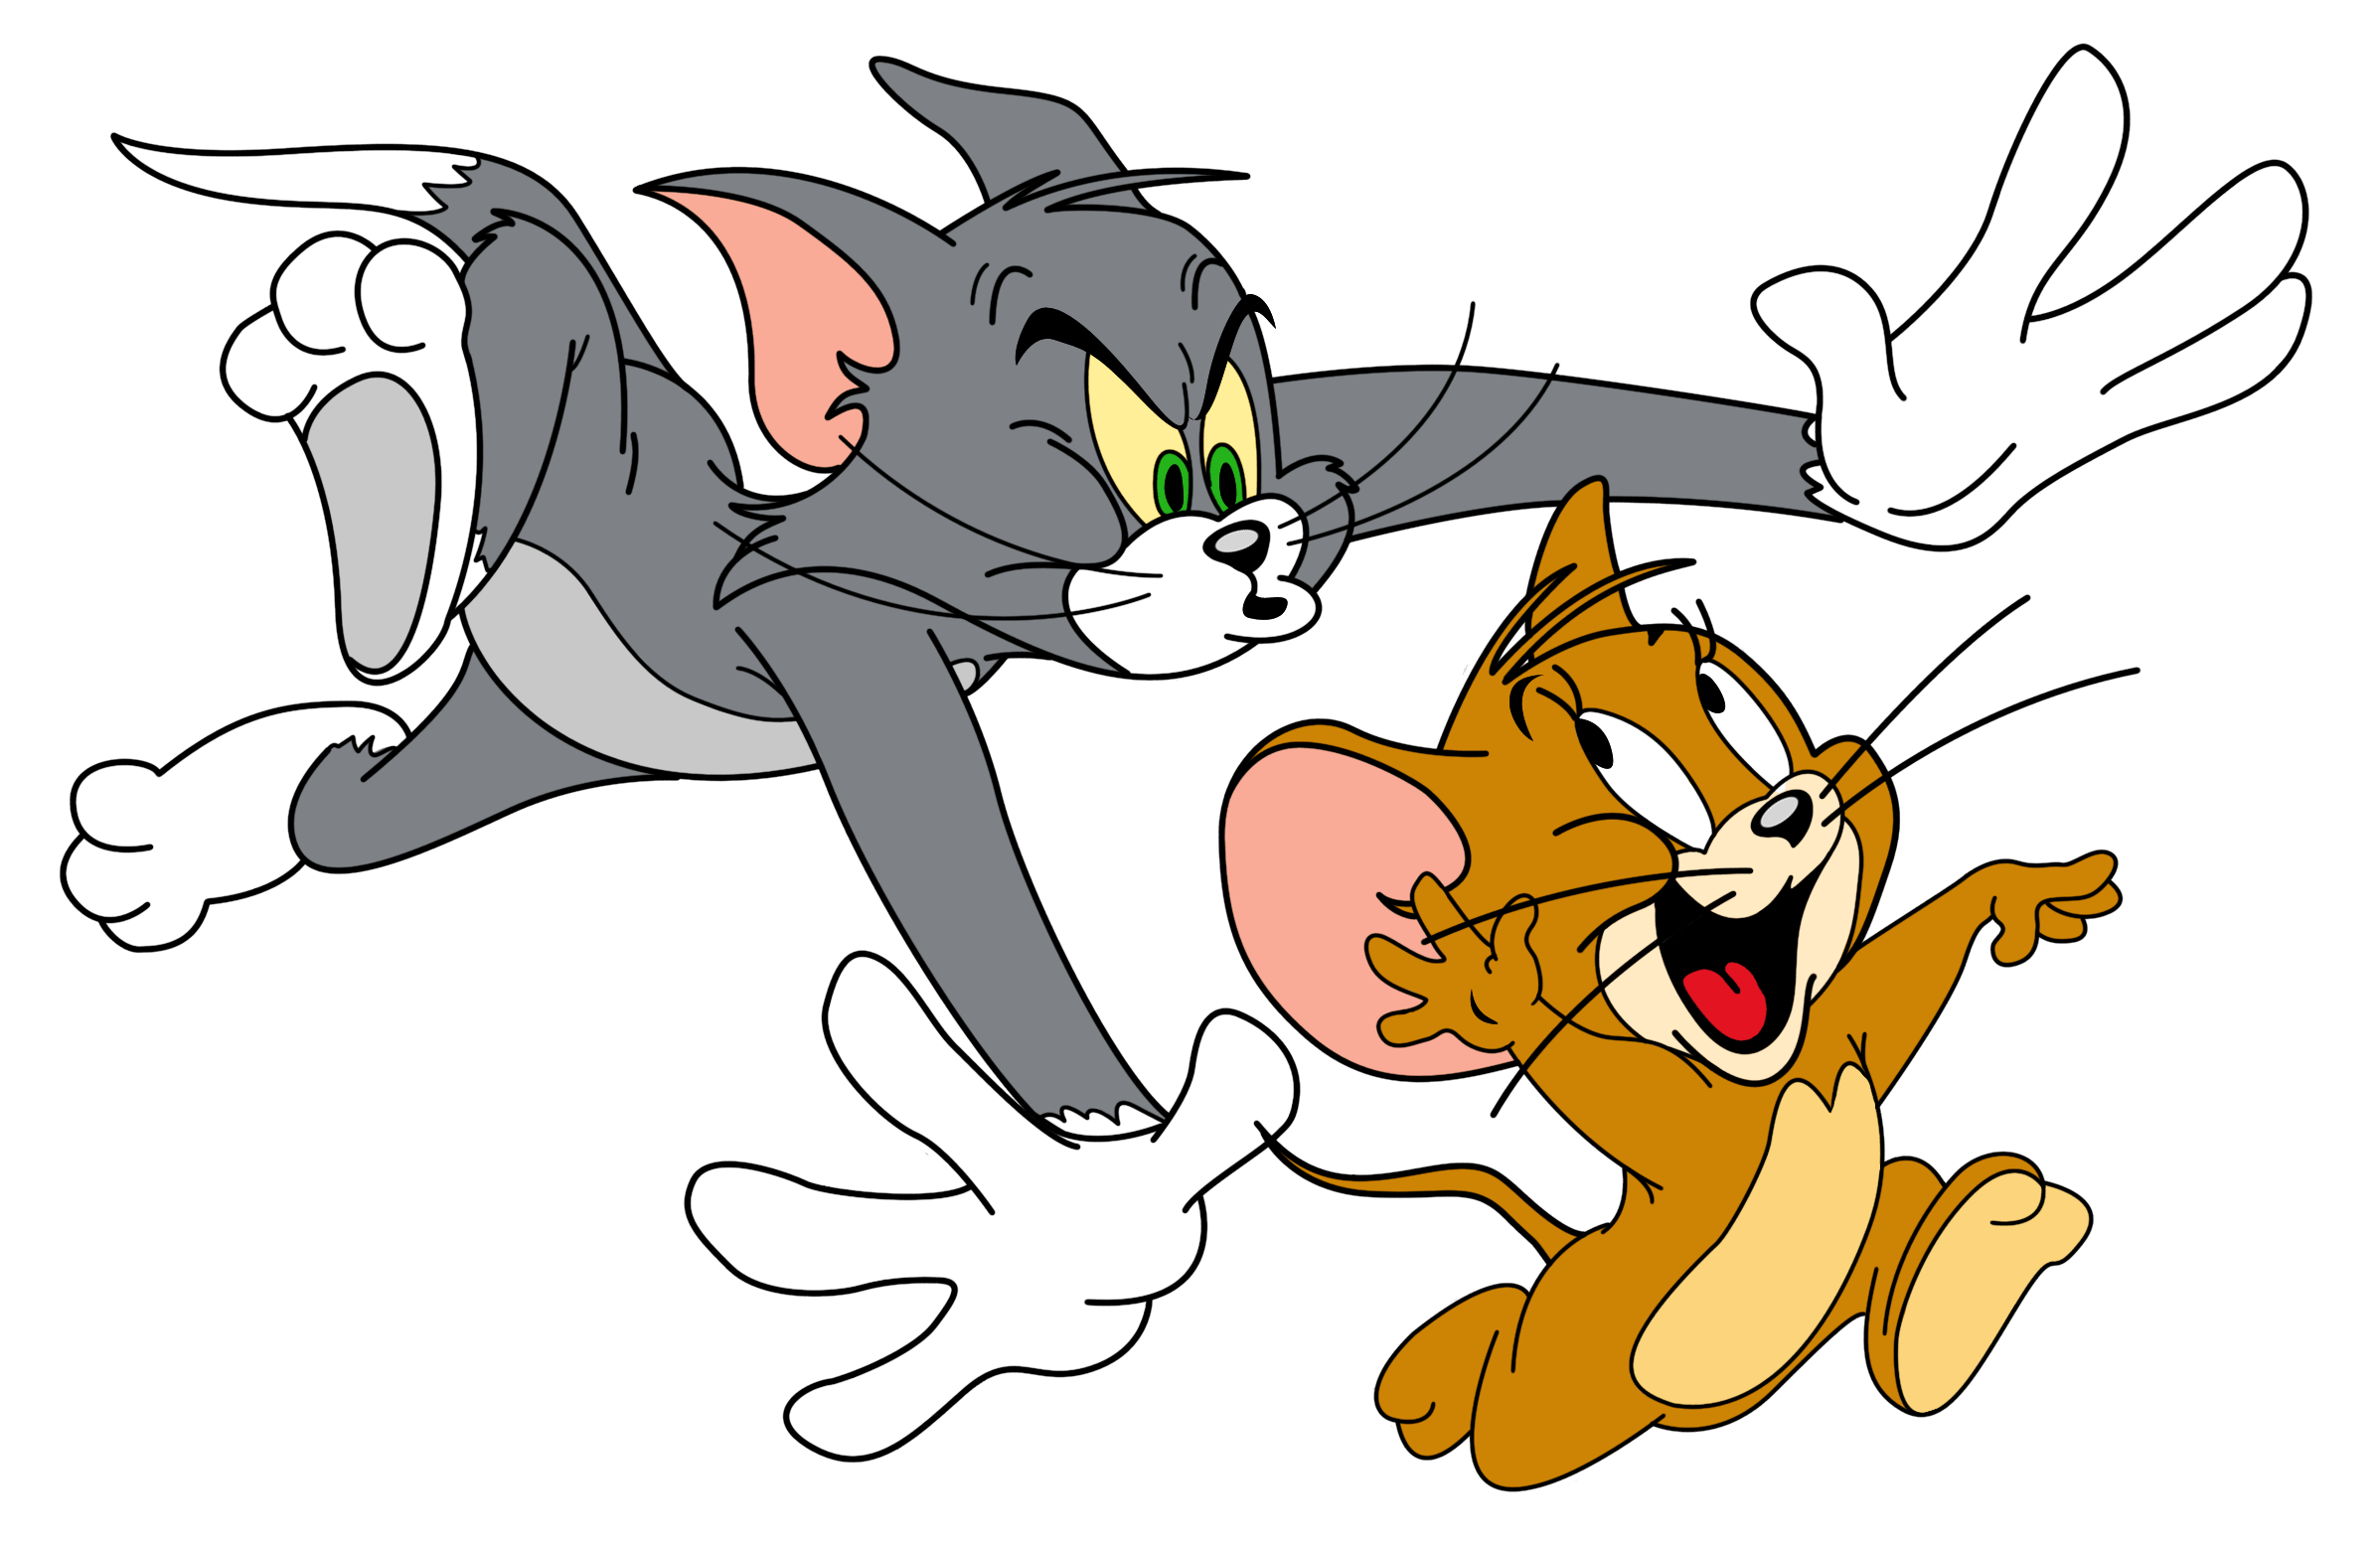 Tom and Jerry. Том и Джерри Джерри. Tom and Jerry cartoon. Tom from Tom and Jerry.